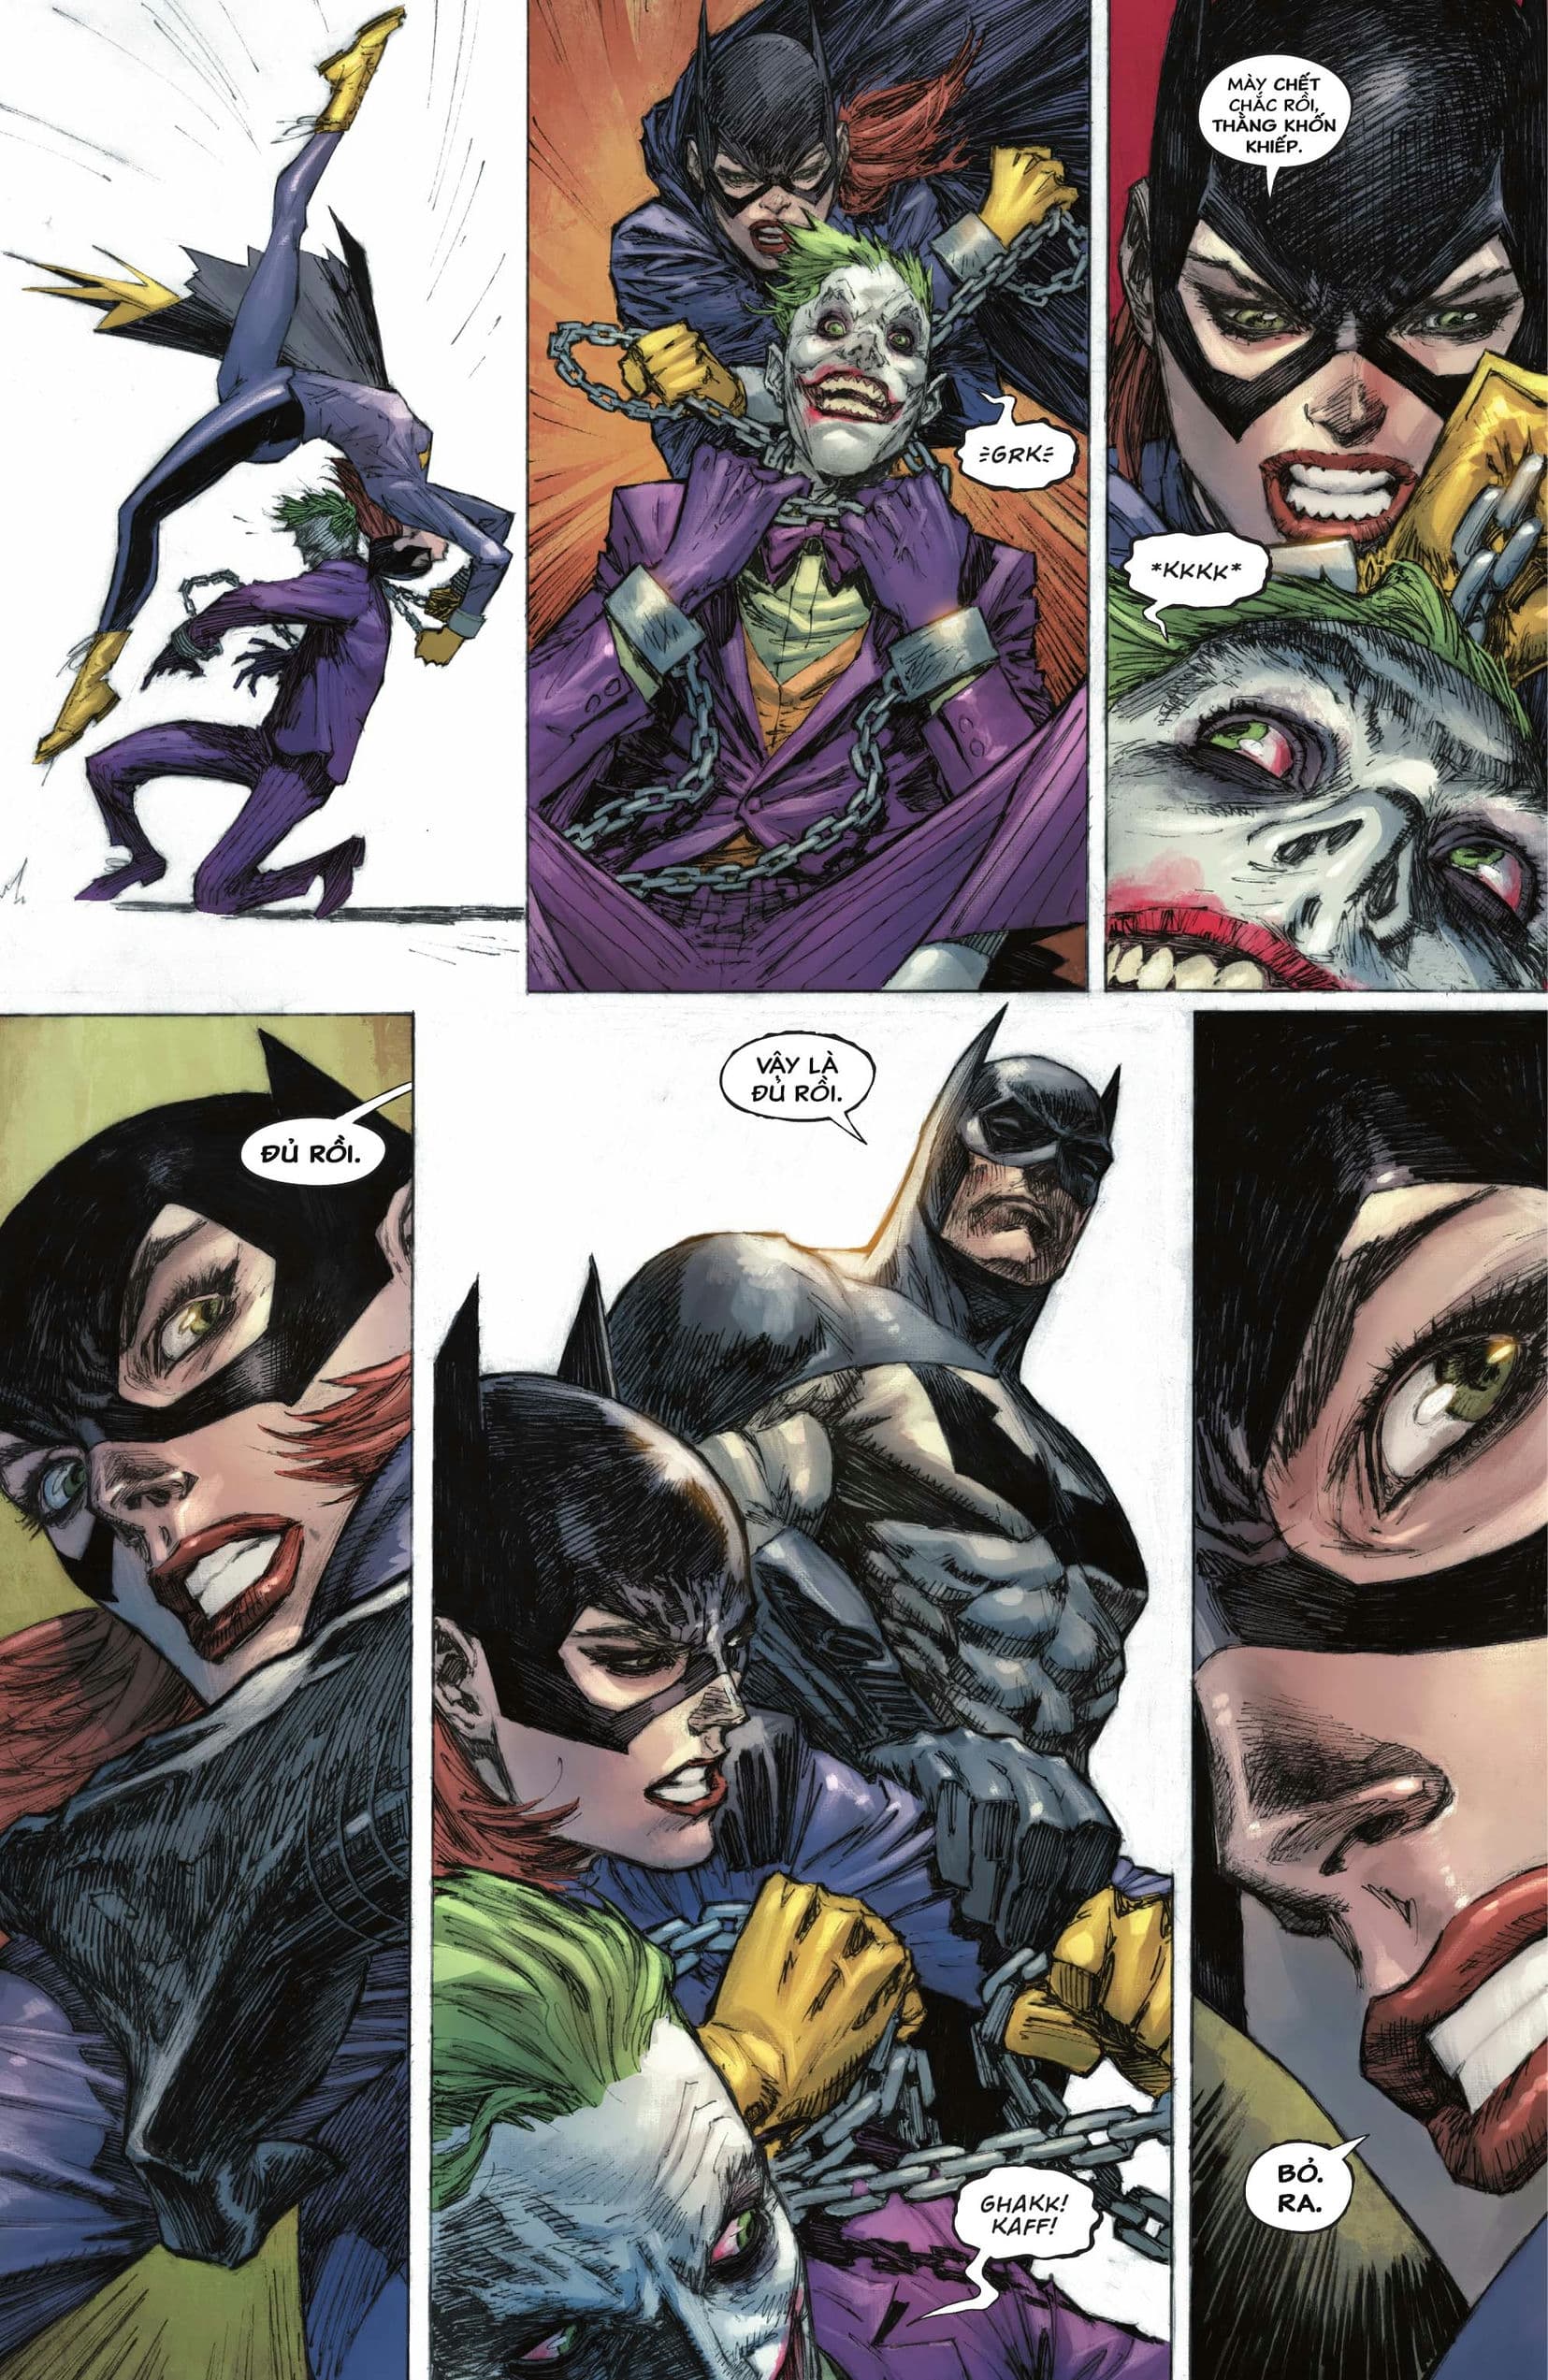 https://langgeek.net/wp-content/webpc-passthru.php?src=https://langgeek.net/wp-content/uploads/2023/04/Batman-_-The-Joker-The-Deadly-Duo-2022-005-015.jpg&nocache=1